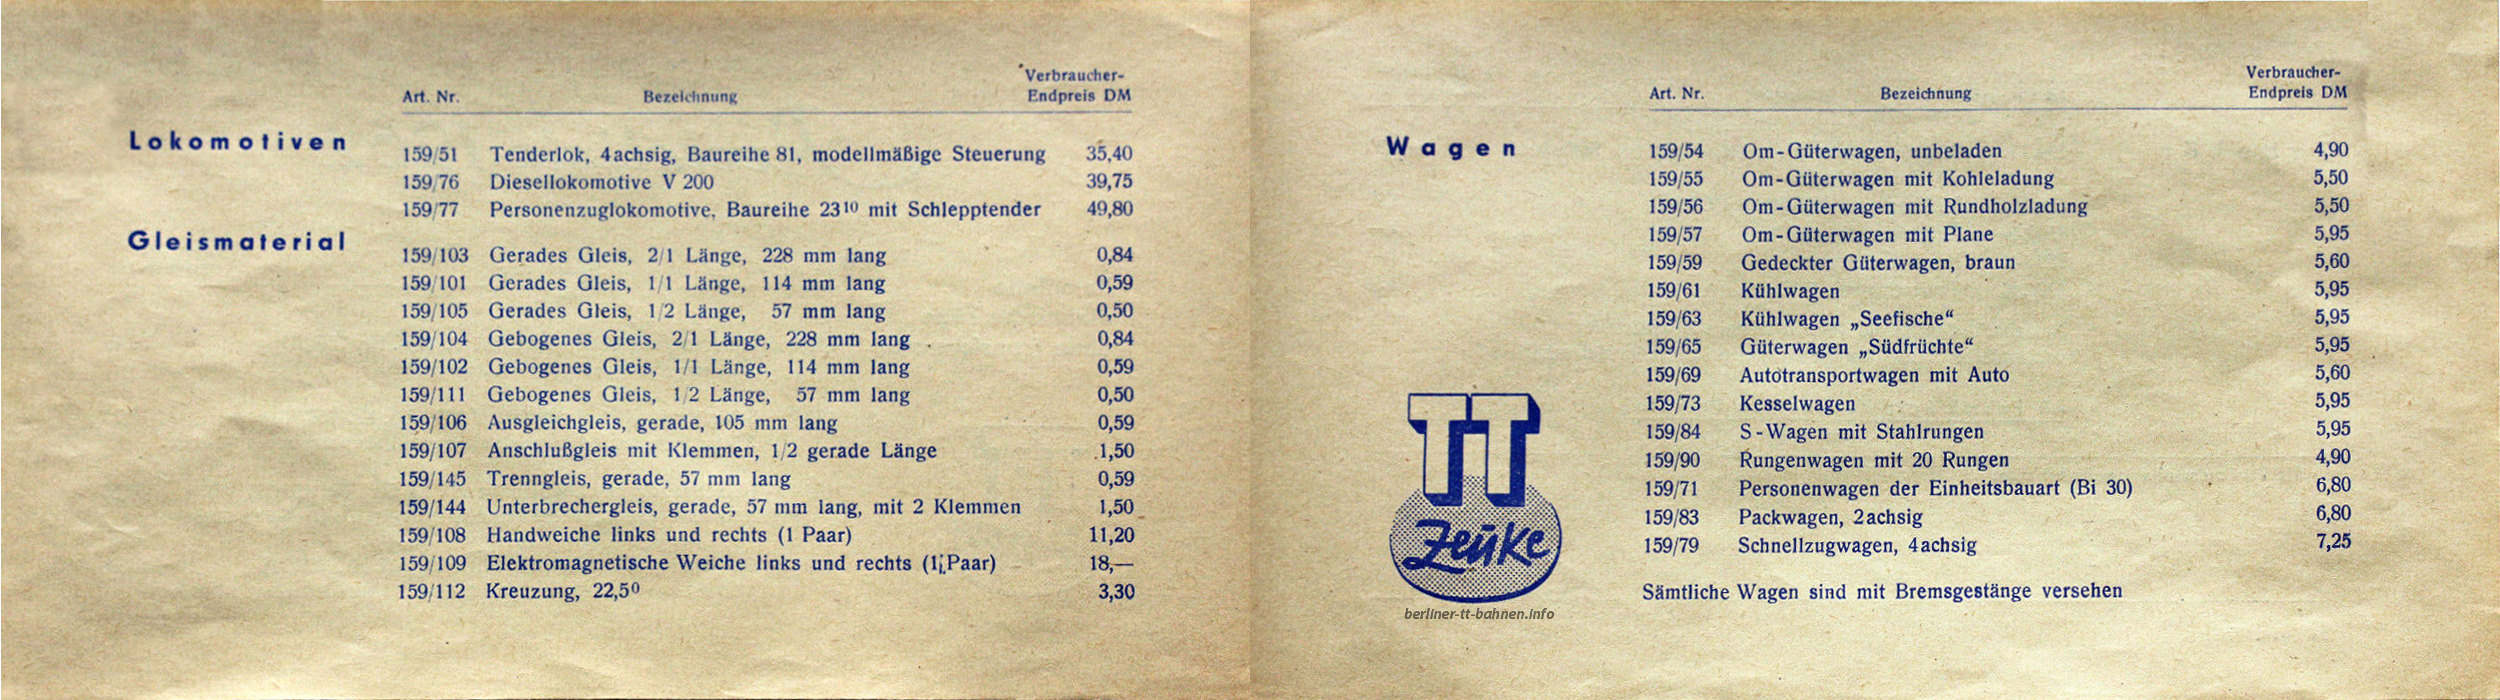 Preisliste zum Katalog 1962 - Innenseite